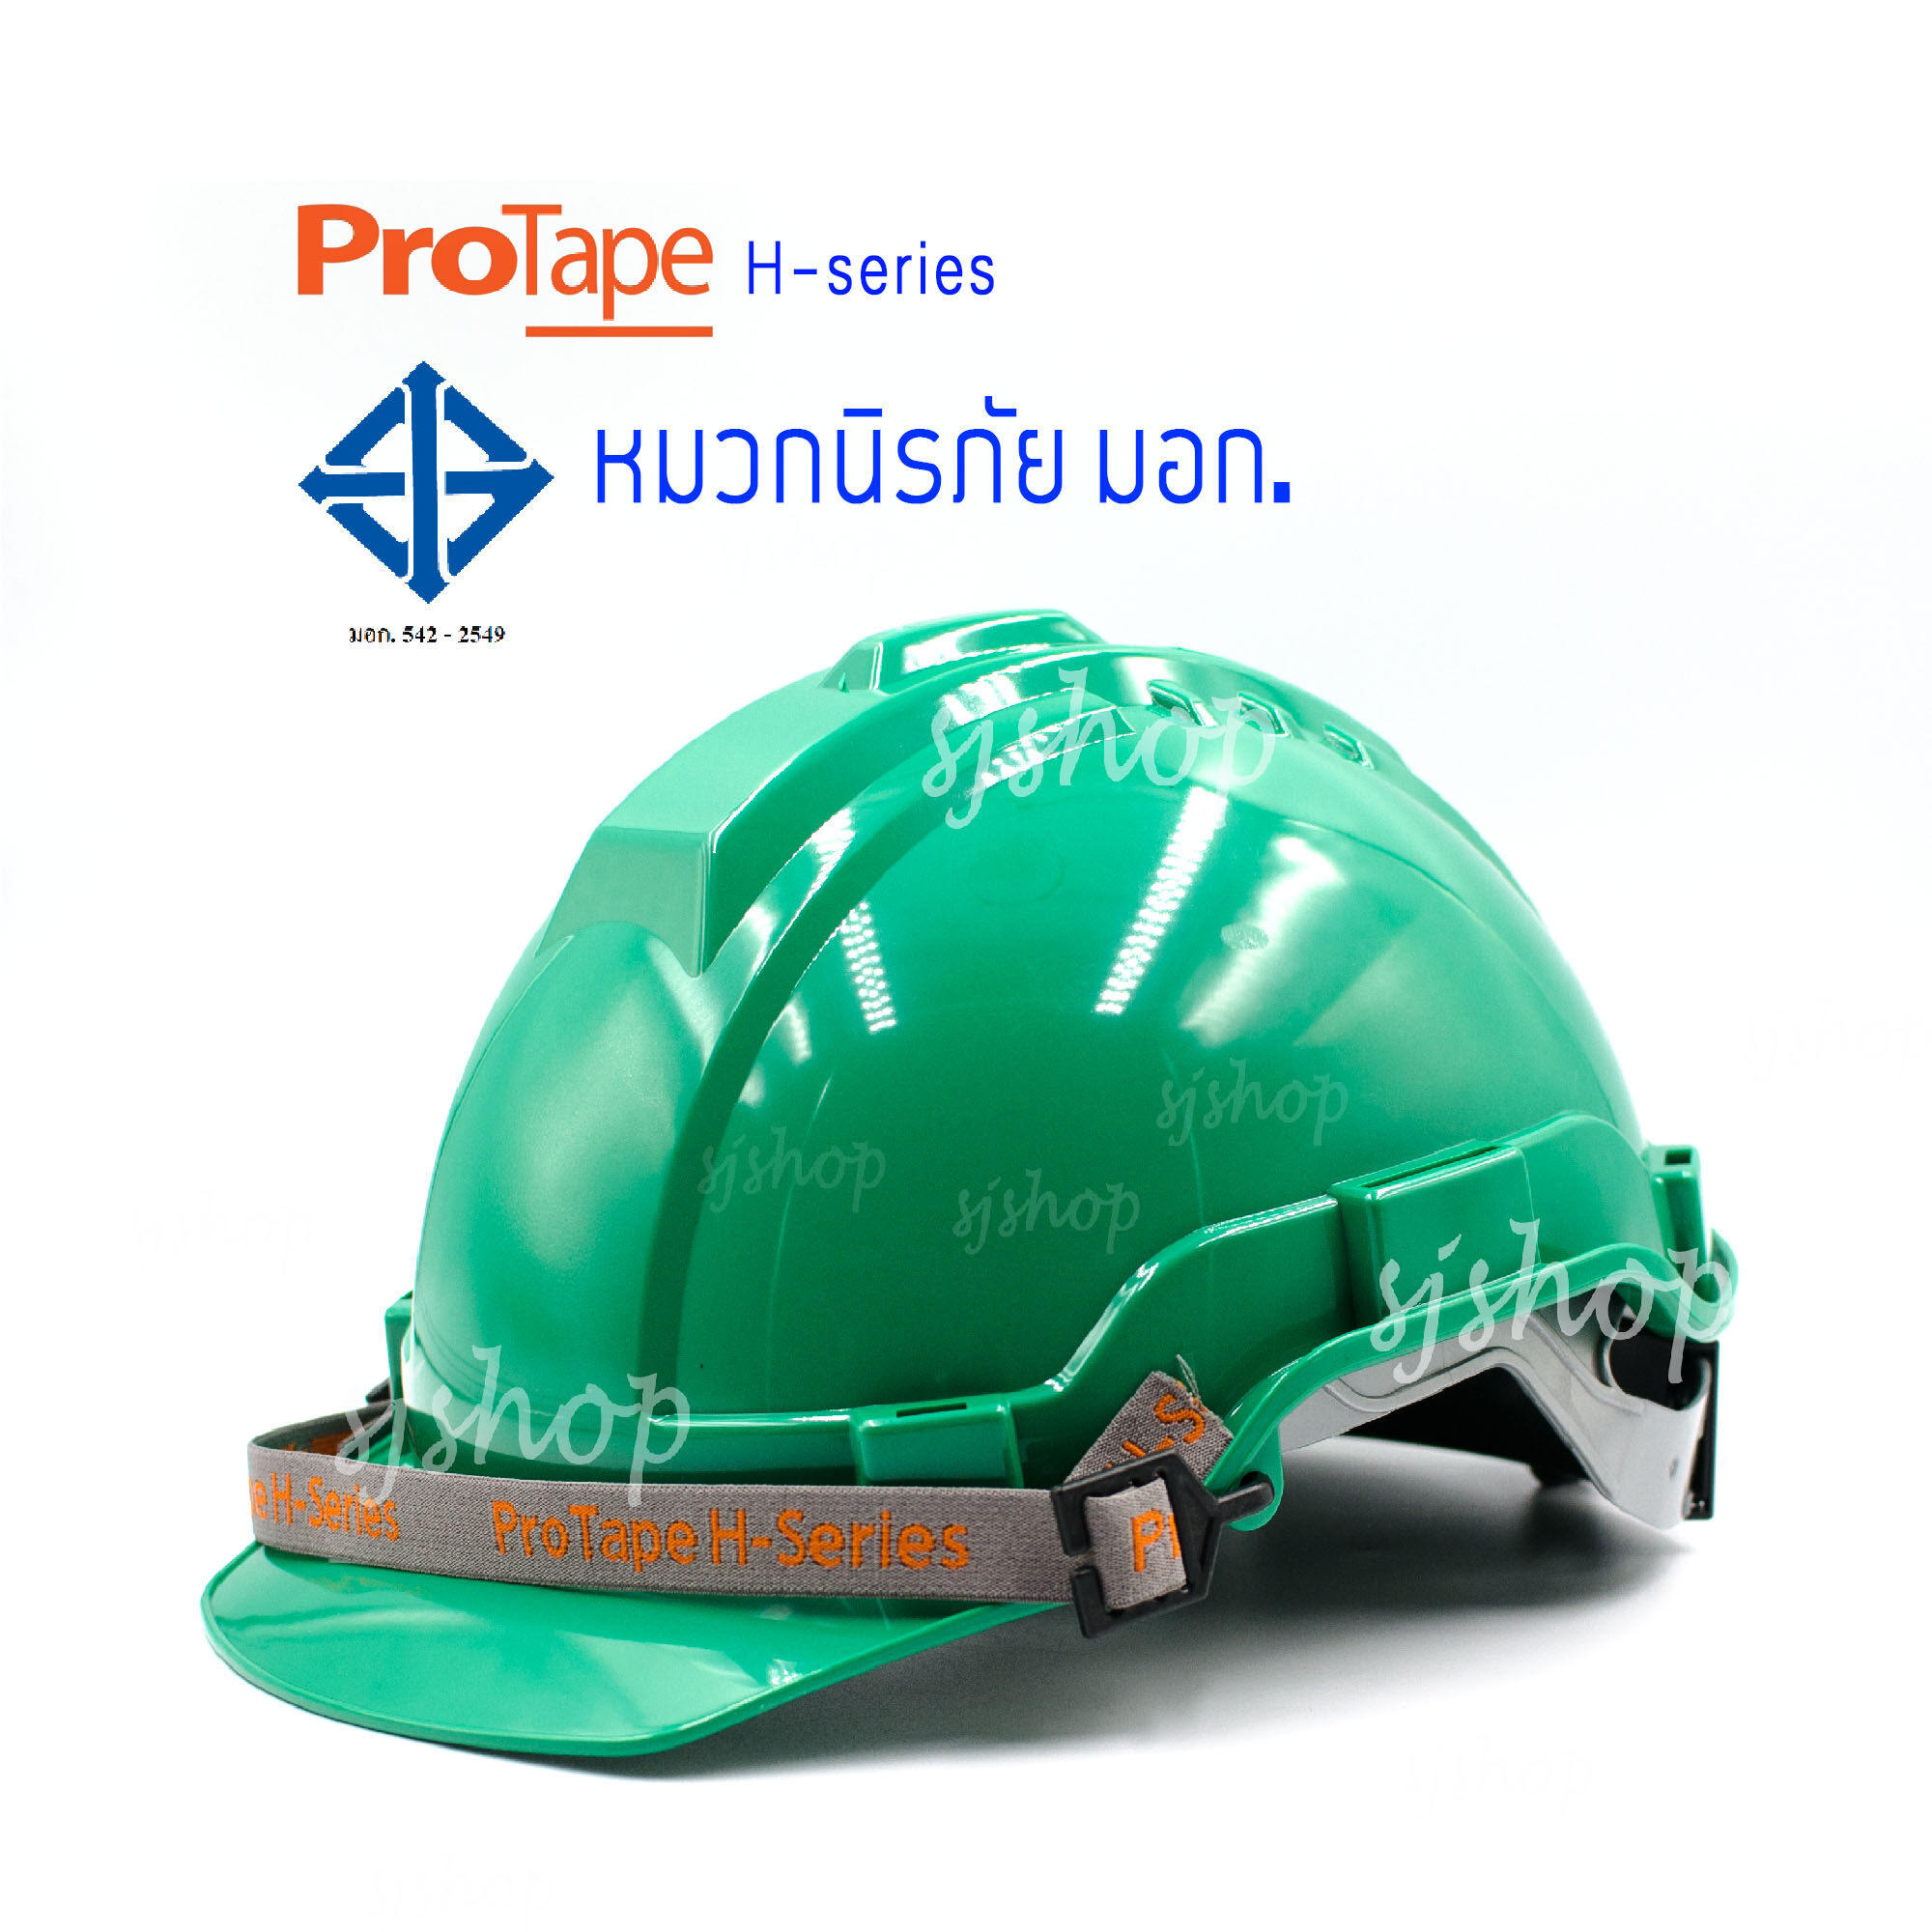 PROTAPE H-series สีเขียว หมวกนิรภัย หมวกเซฟตี้ หมวกวิศวะ หมวกก่อสร้าง หมวกกันกระแทก แบบปรับหมุน สายรัดคางยางยืด SAFETY HELMET (High Impact ABS) น้ำหนักเบา แข็งแรง ป้องกันแรงกระแทกสูง ผ่านการรับรองมาตรฐานความปลอยภัย มอก.368-2554 ผลิตในประเทศไทย